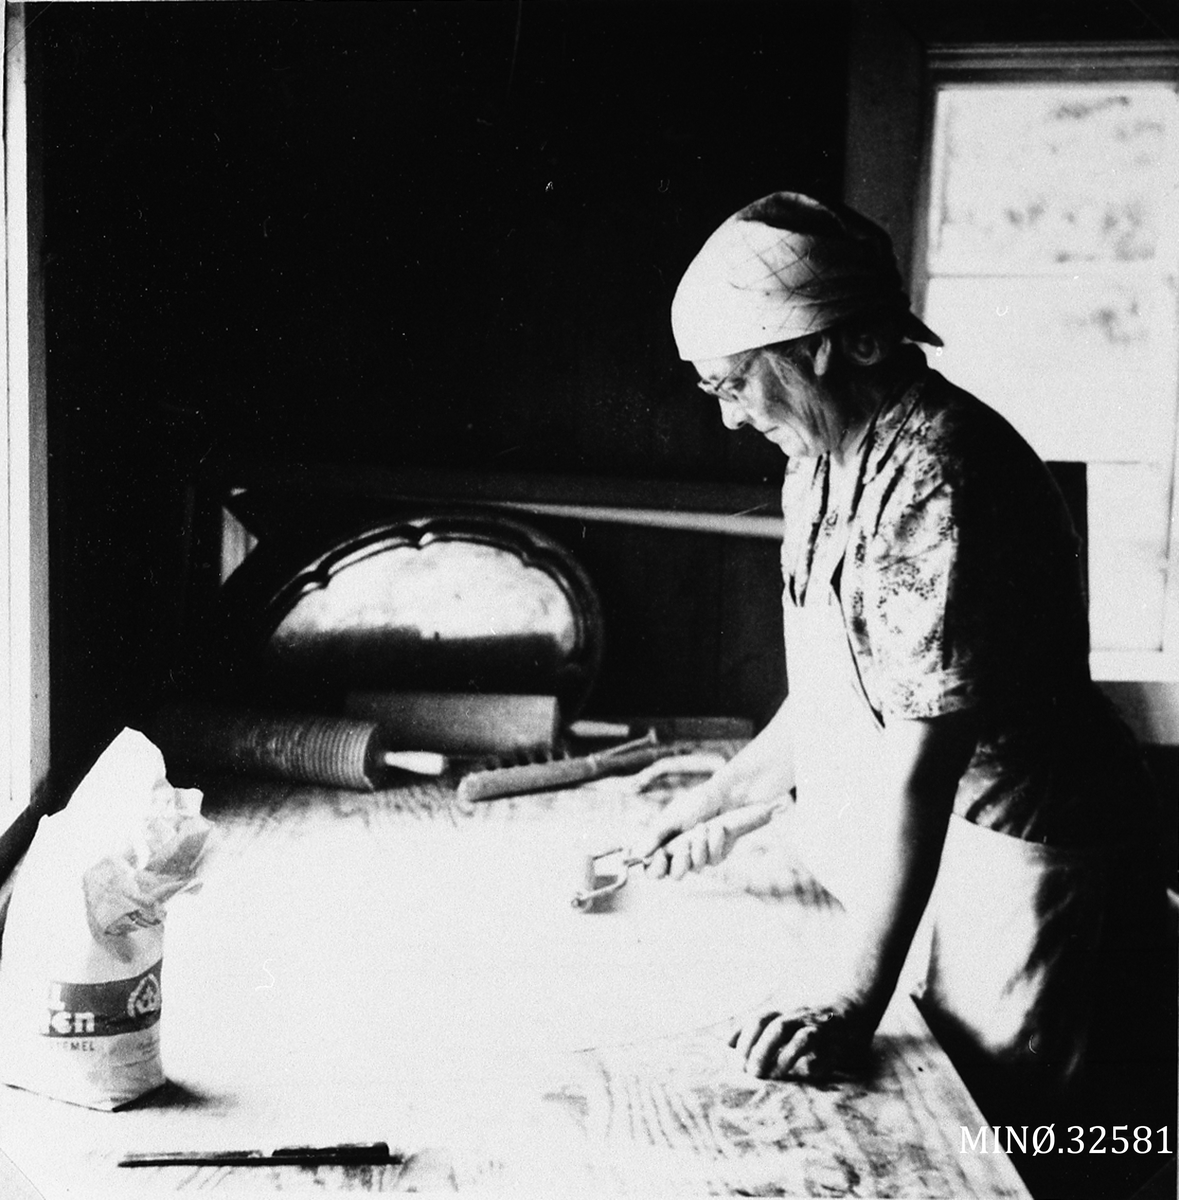 Hilda Hagen baker ut deilg til sirupstynnkake.